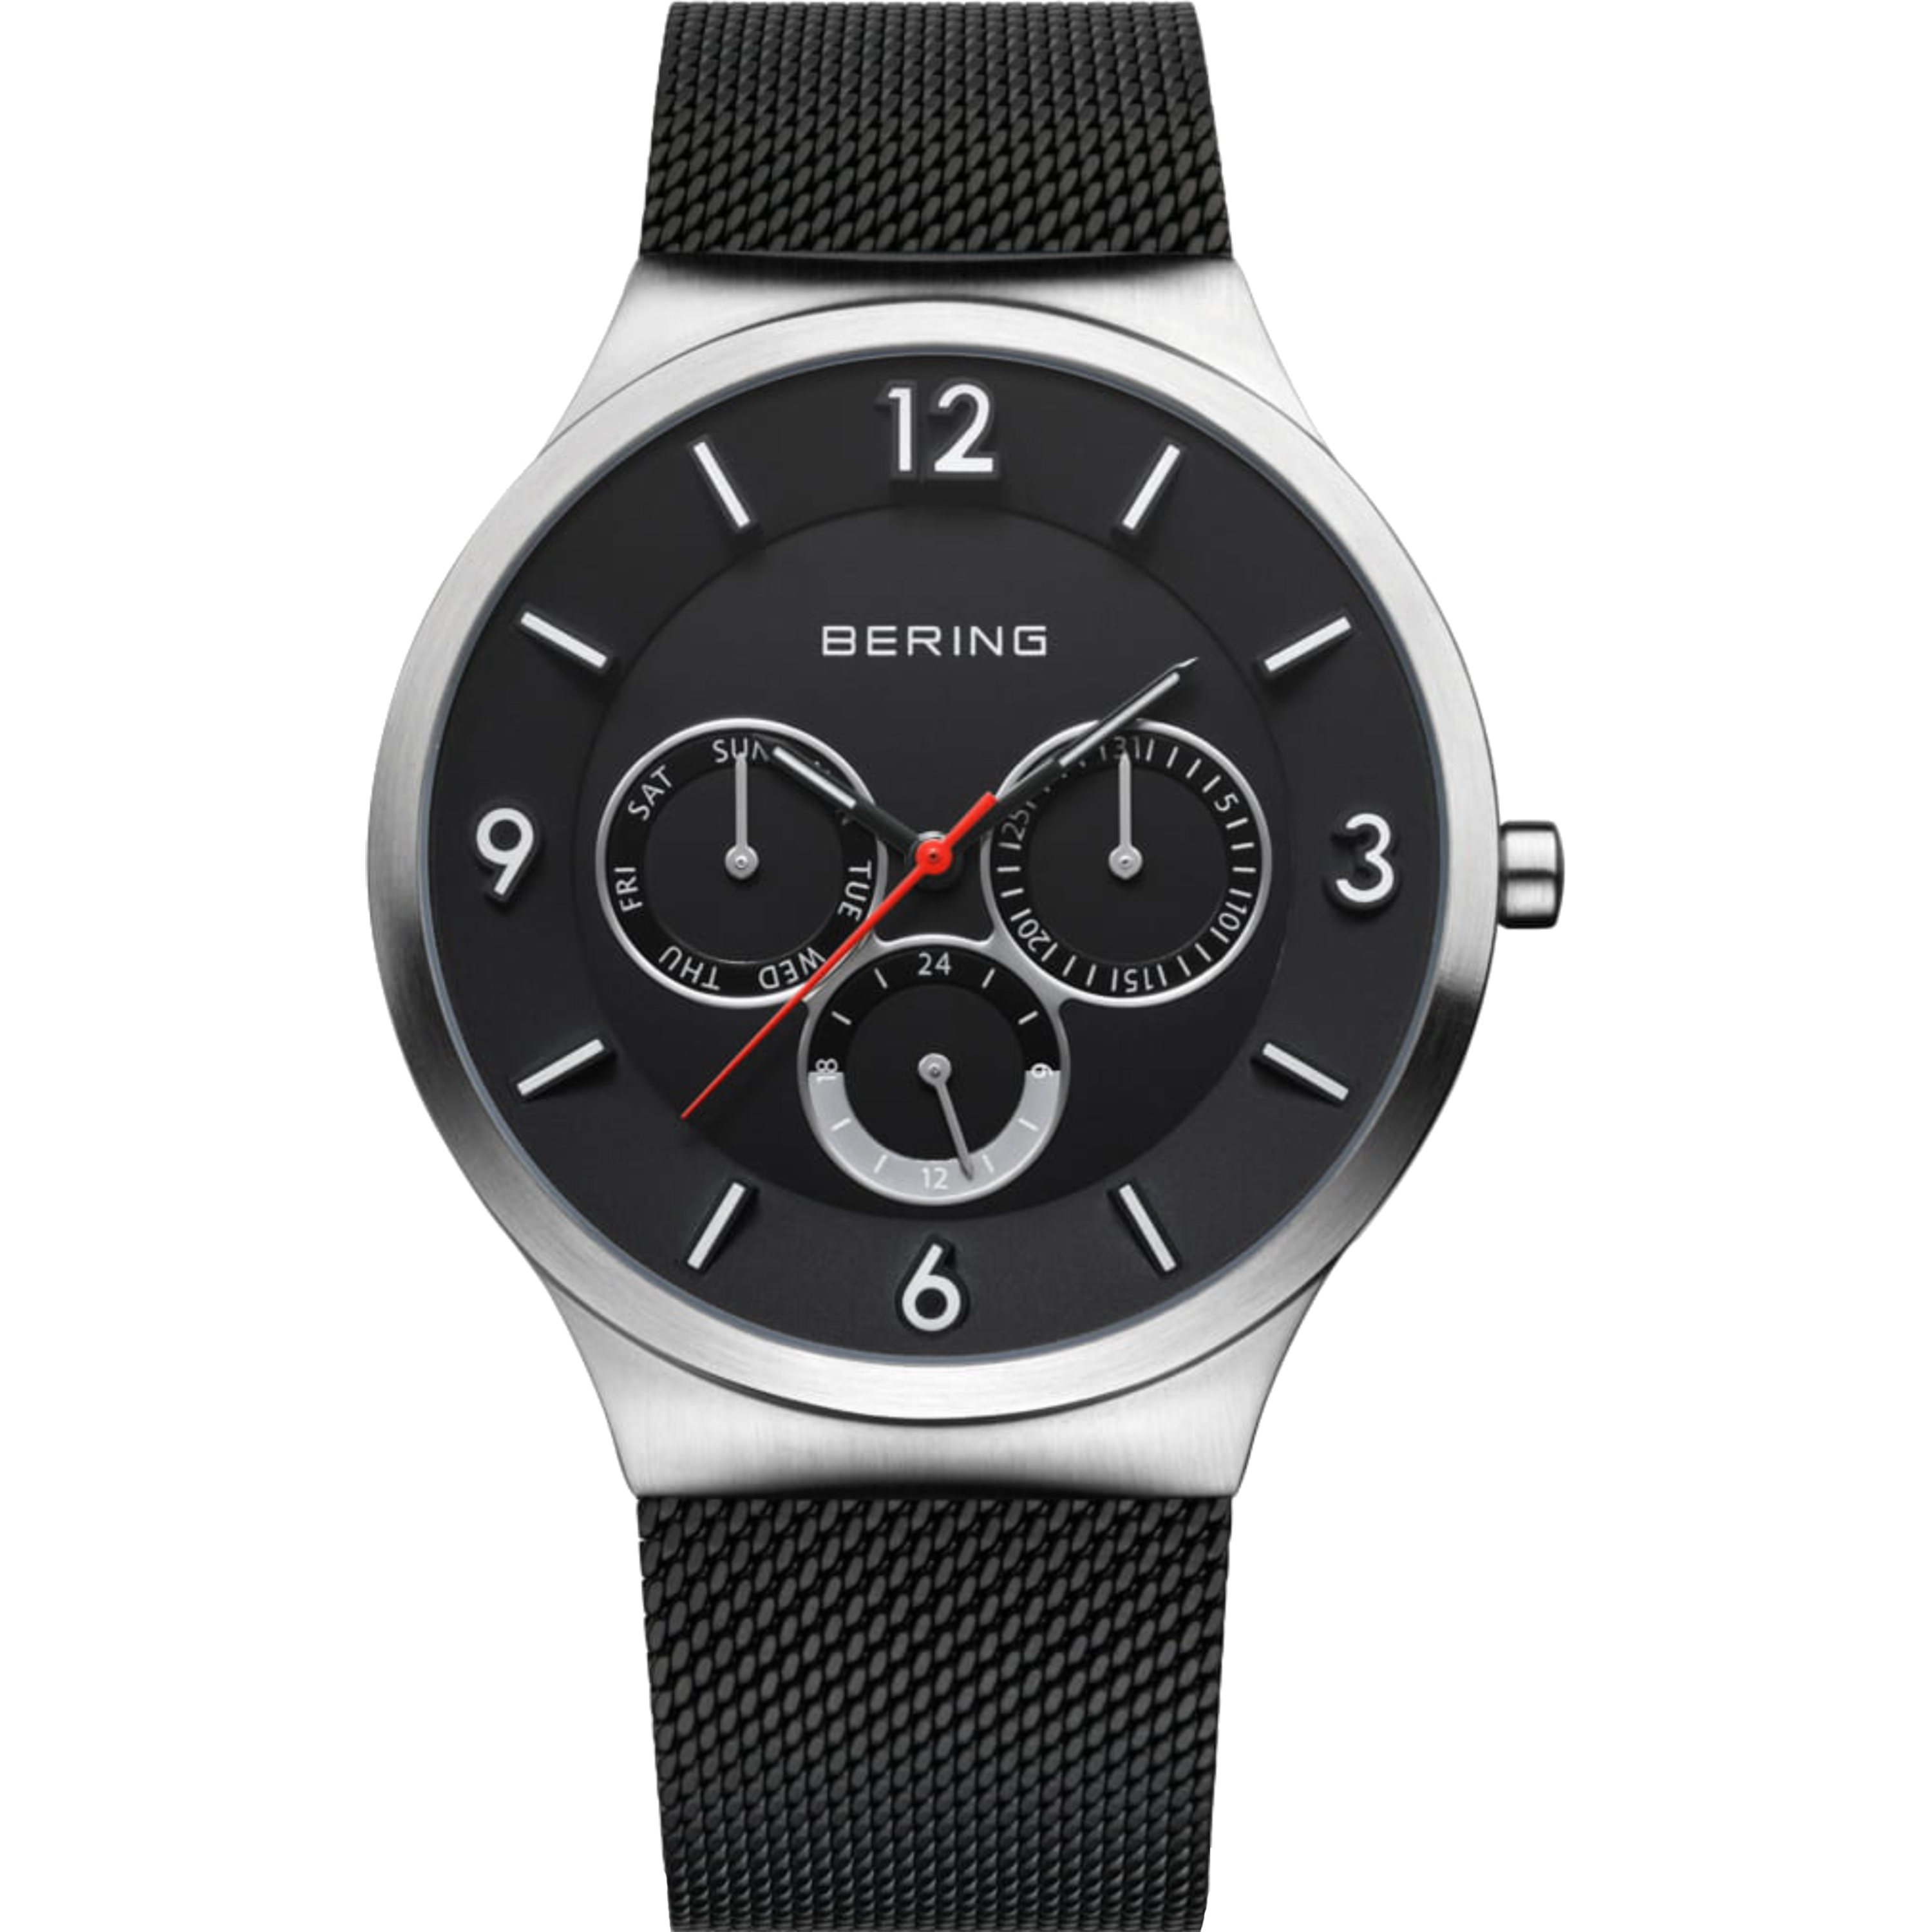 שעון יד לגבר Bering 33441-102 41mm צבע שחור/כסף - אחריות לשנה ע"י היבואן